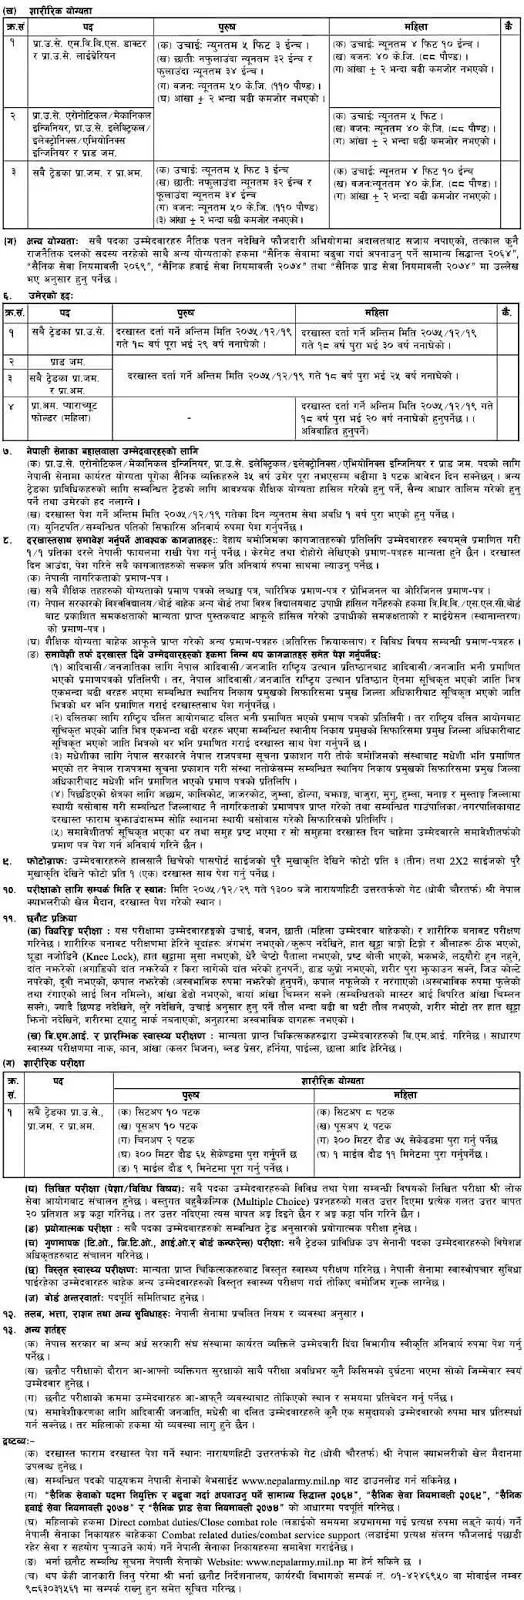 Nepal Army Vacancy Notice